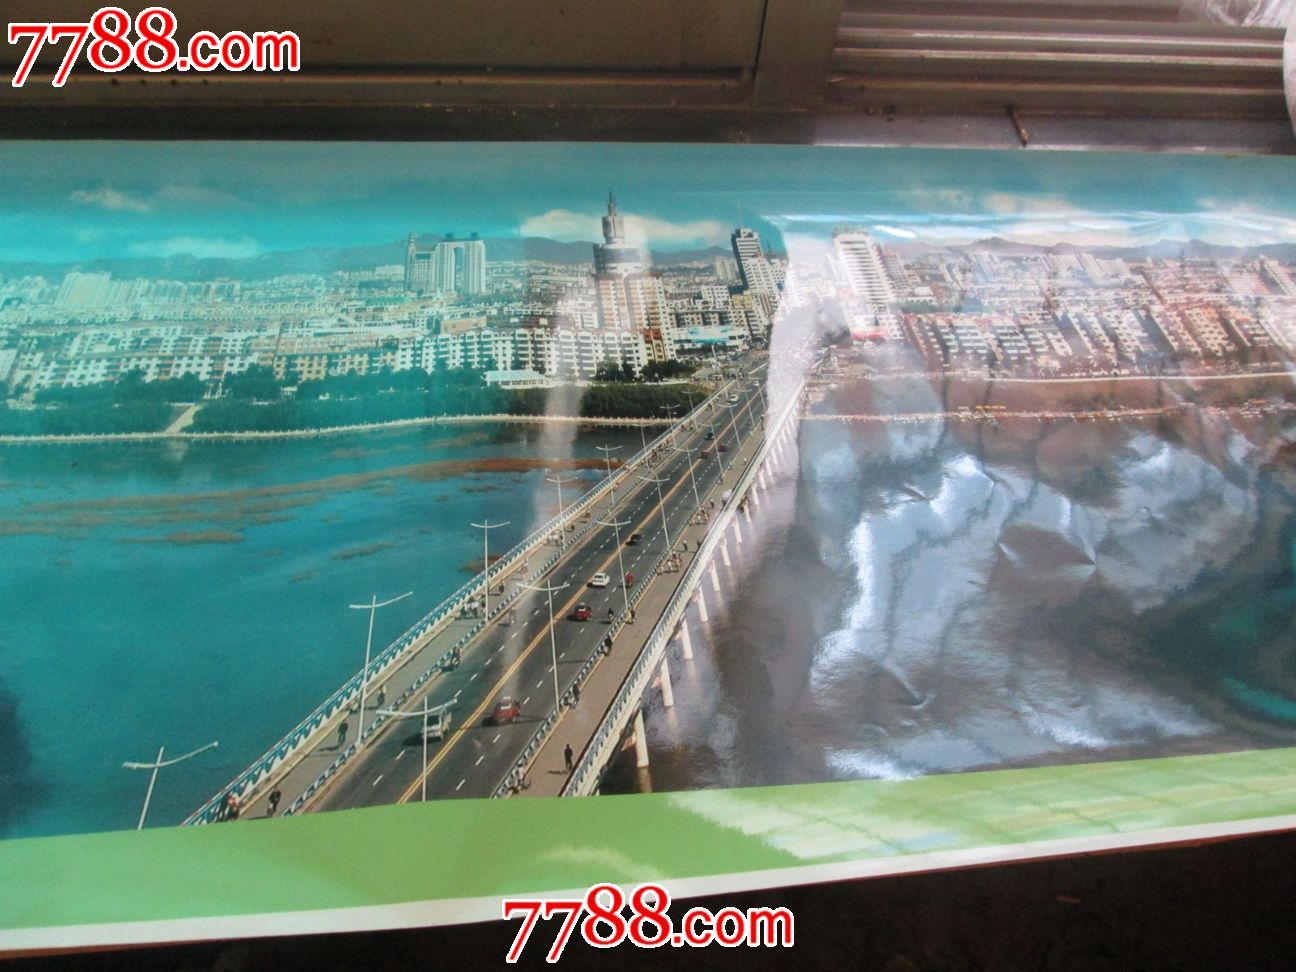 老锦州老照片:长约3米乘45CM超大照片2004年